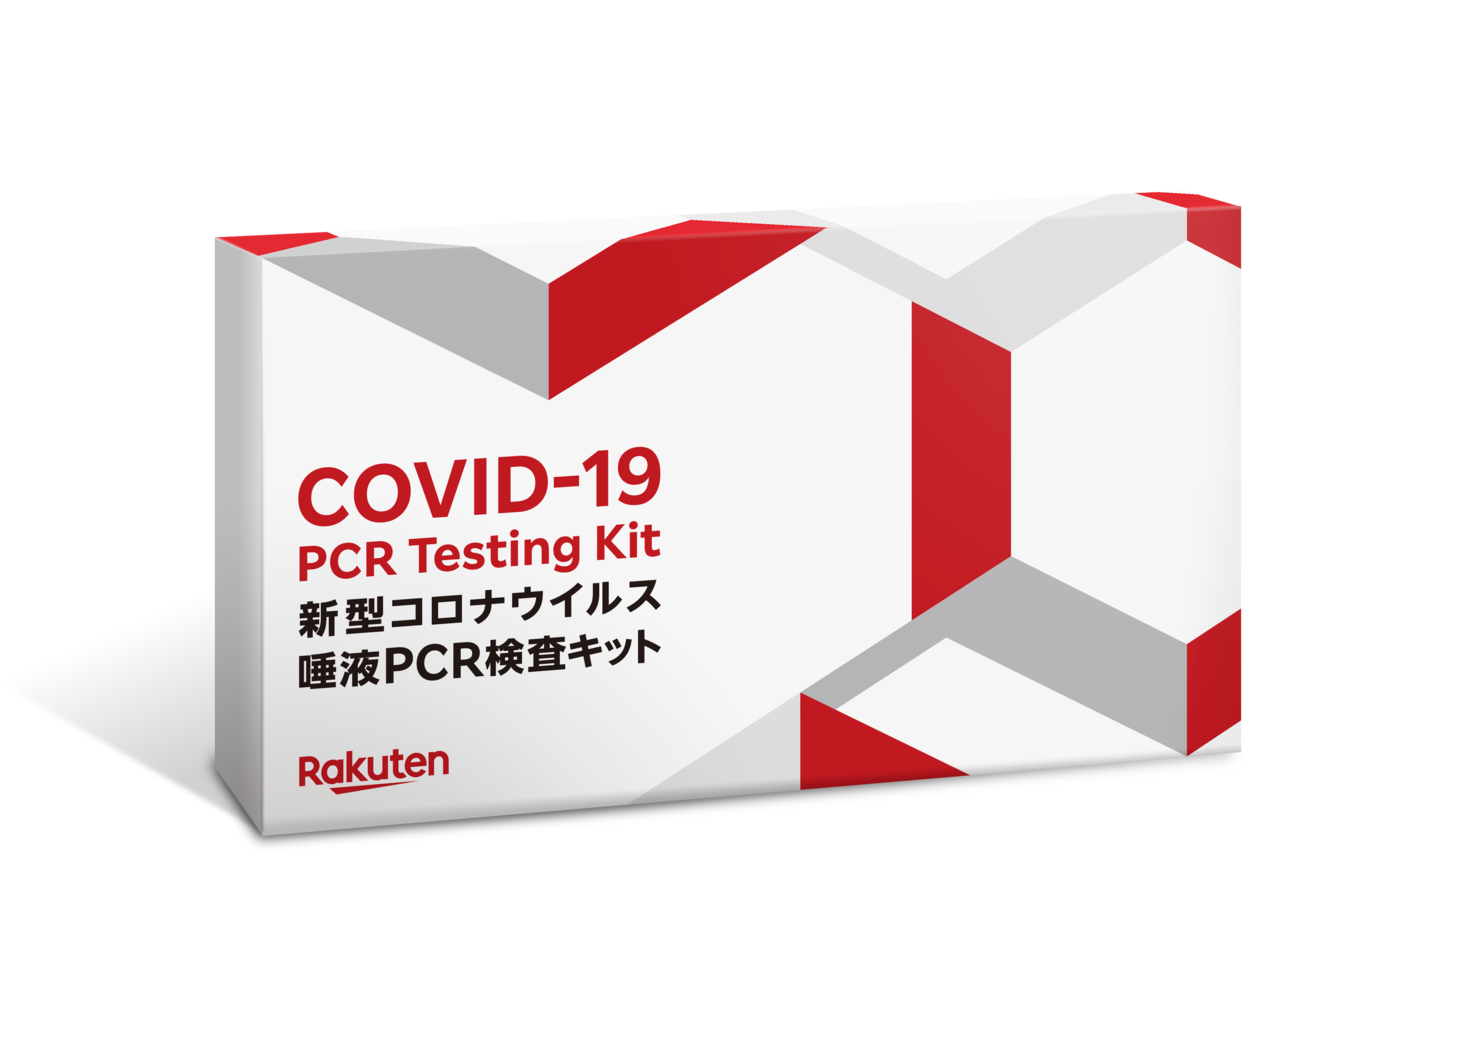 楽天、「新型コロナウイルス唾液PCR検査キット」を東急株式会社に提供